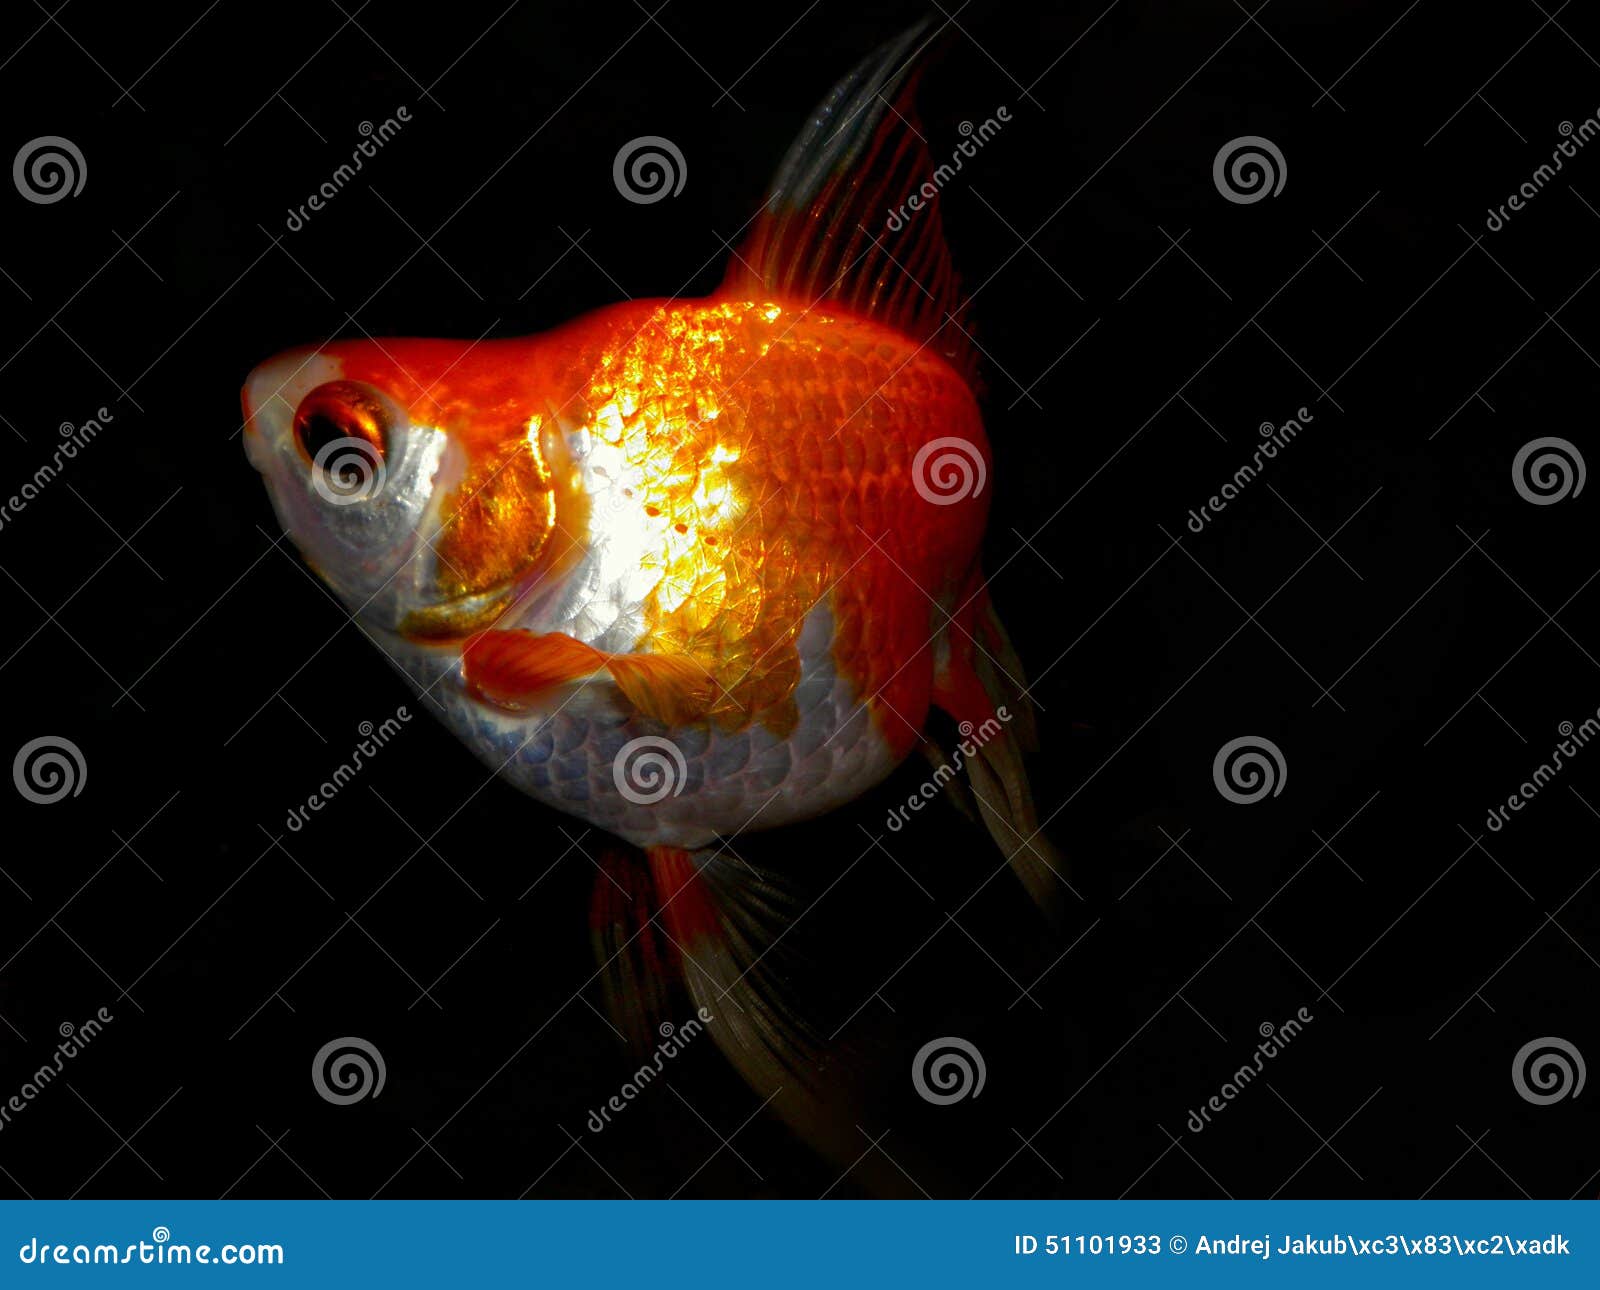 aquarium fish from asia. goldfish